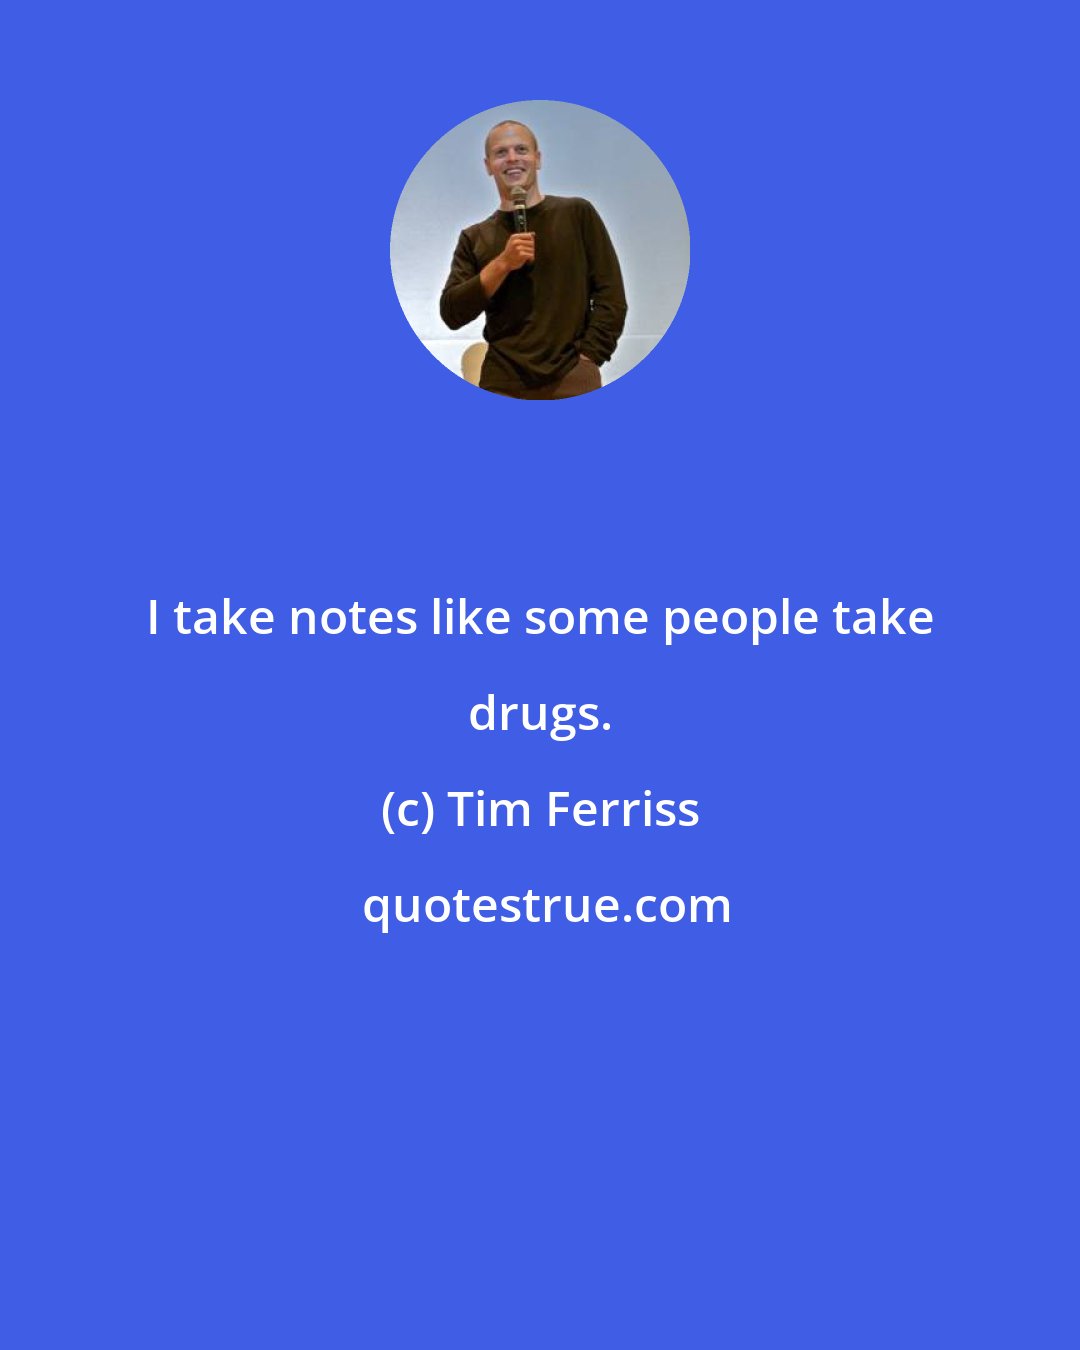 Tim Ferriss: I take notes like some people take drugs.